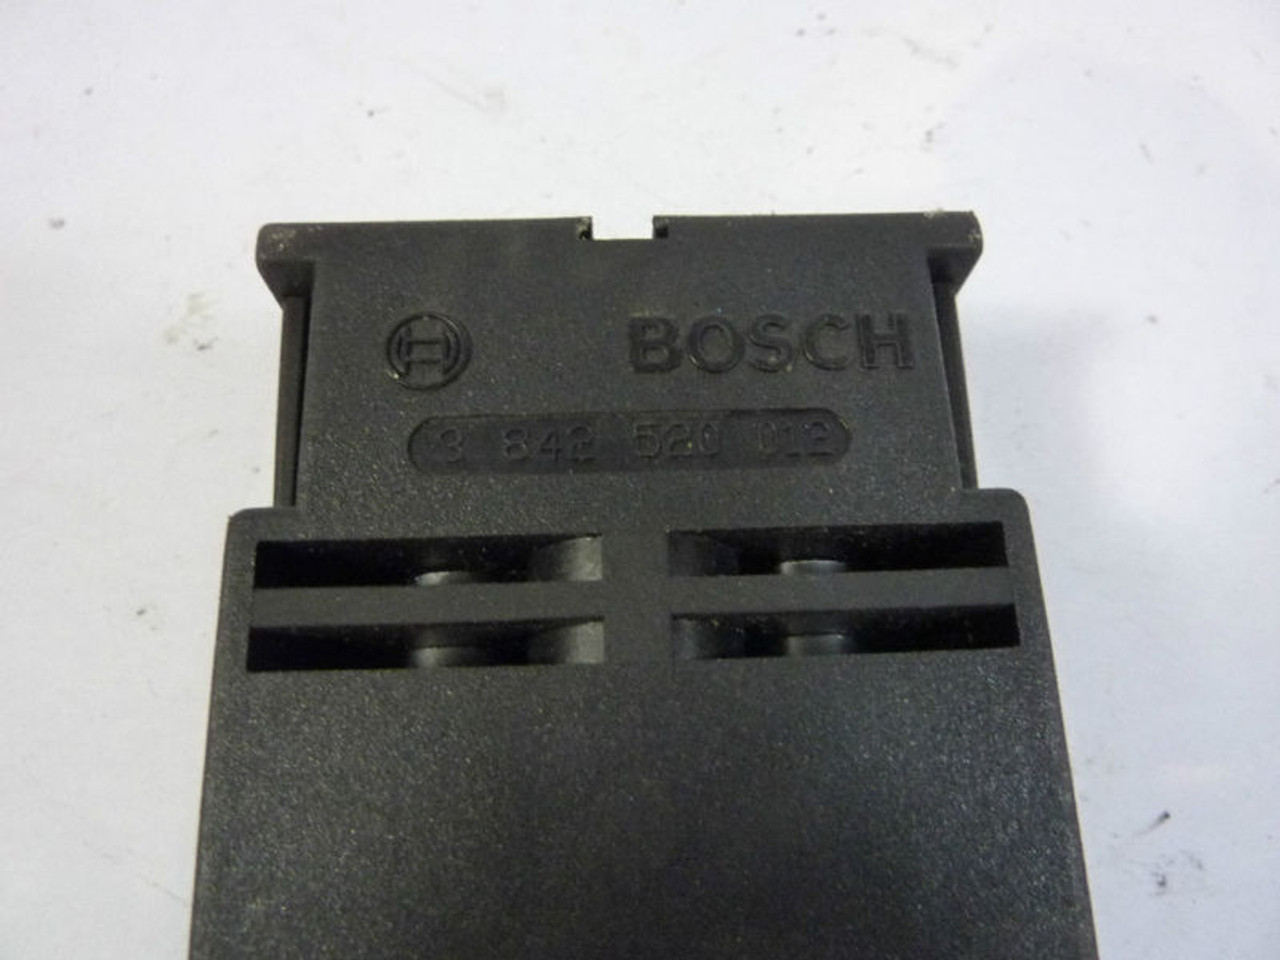 Bosch 3842-520-012 Door Stop Latch USED